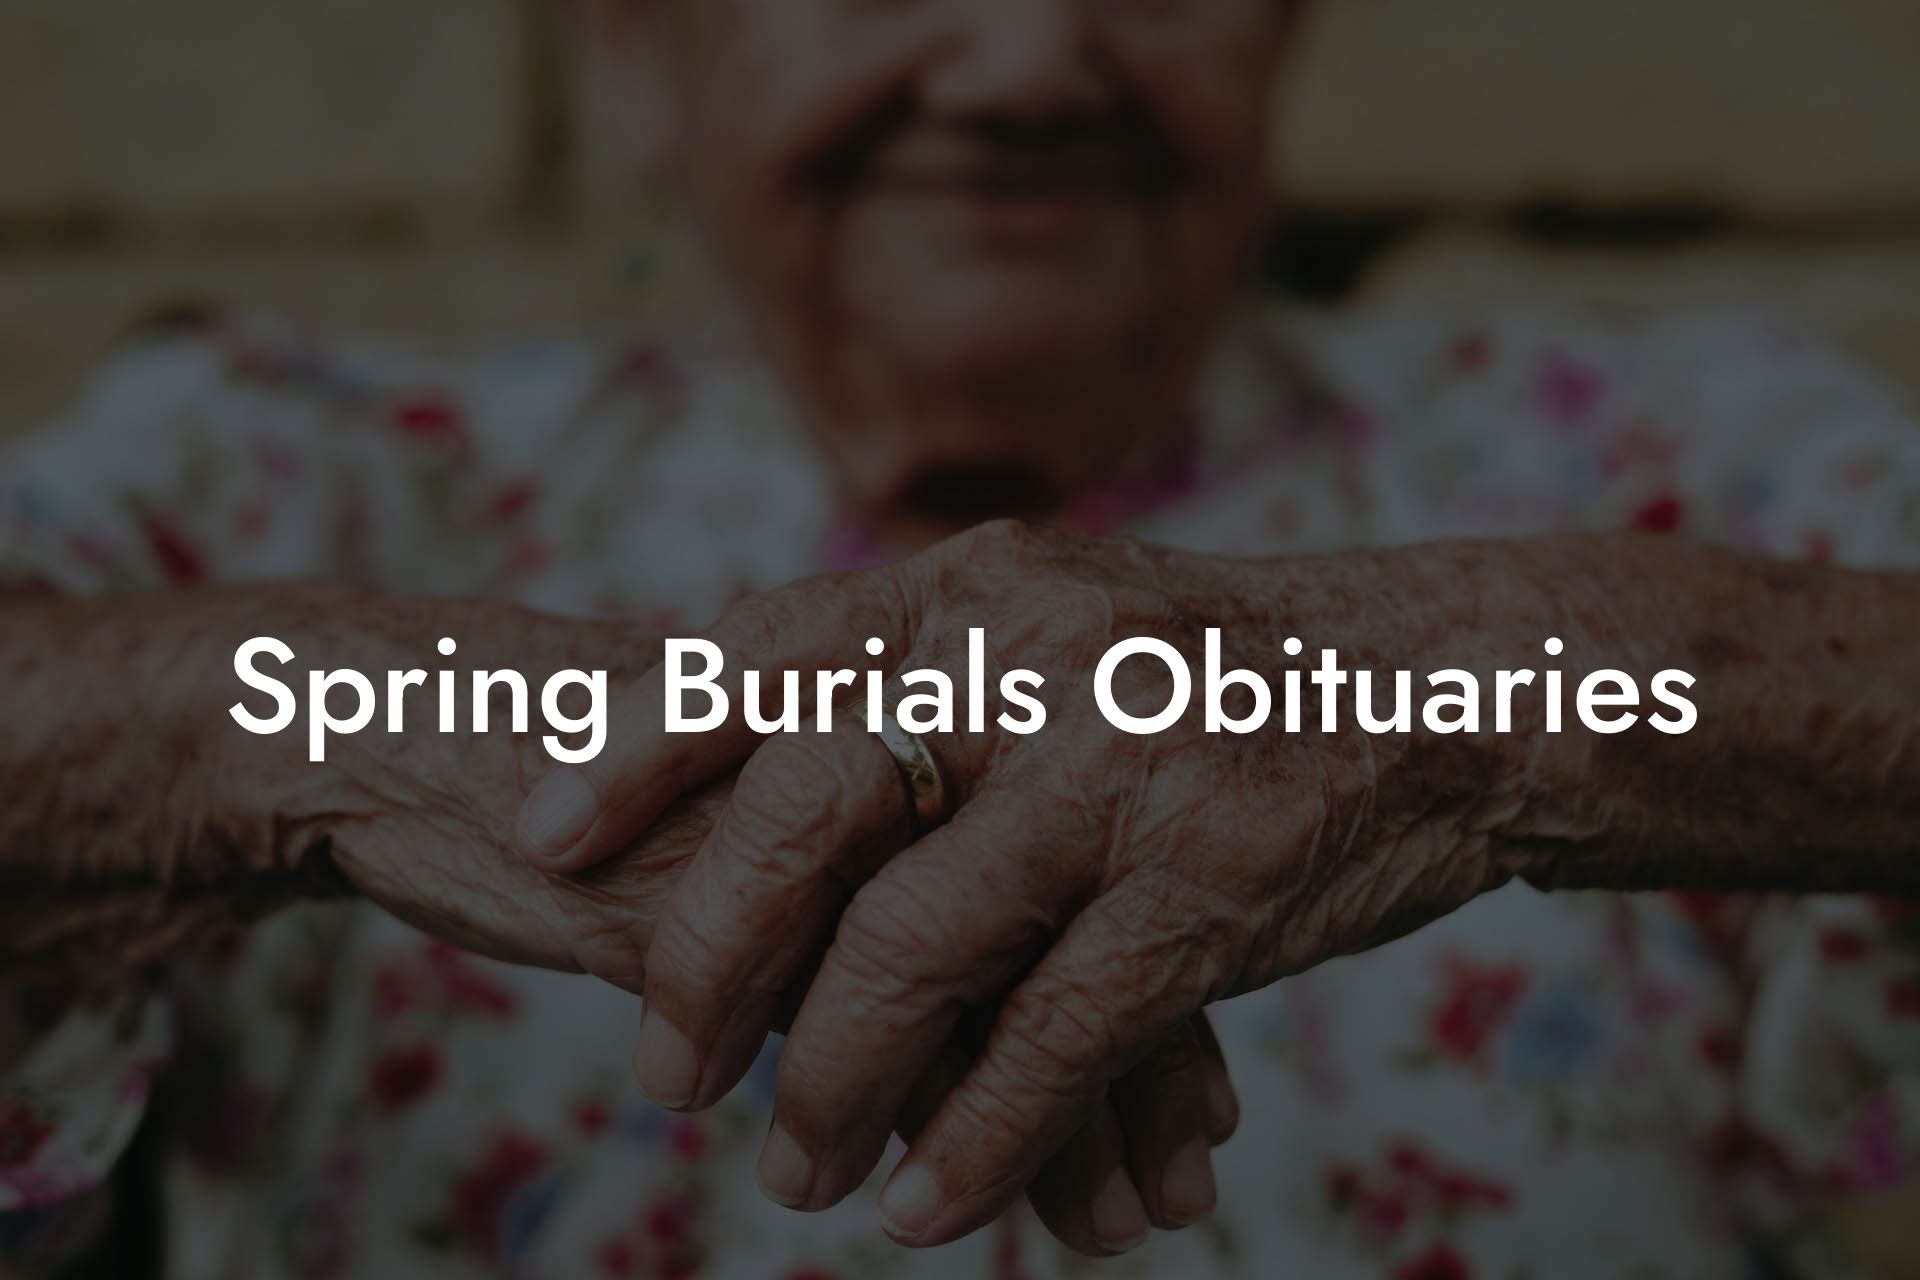 Spring Burials Obituaries